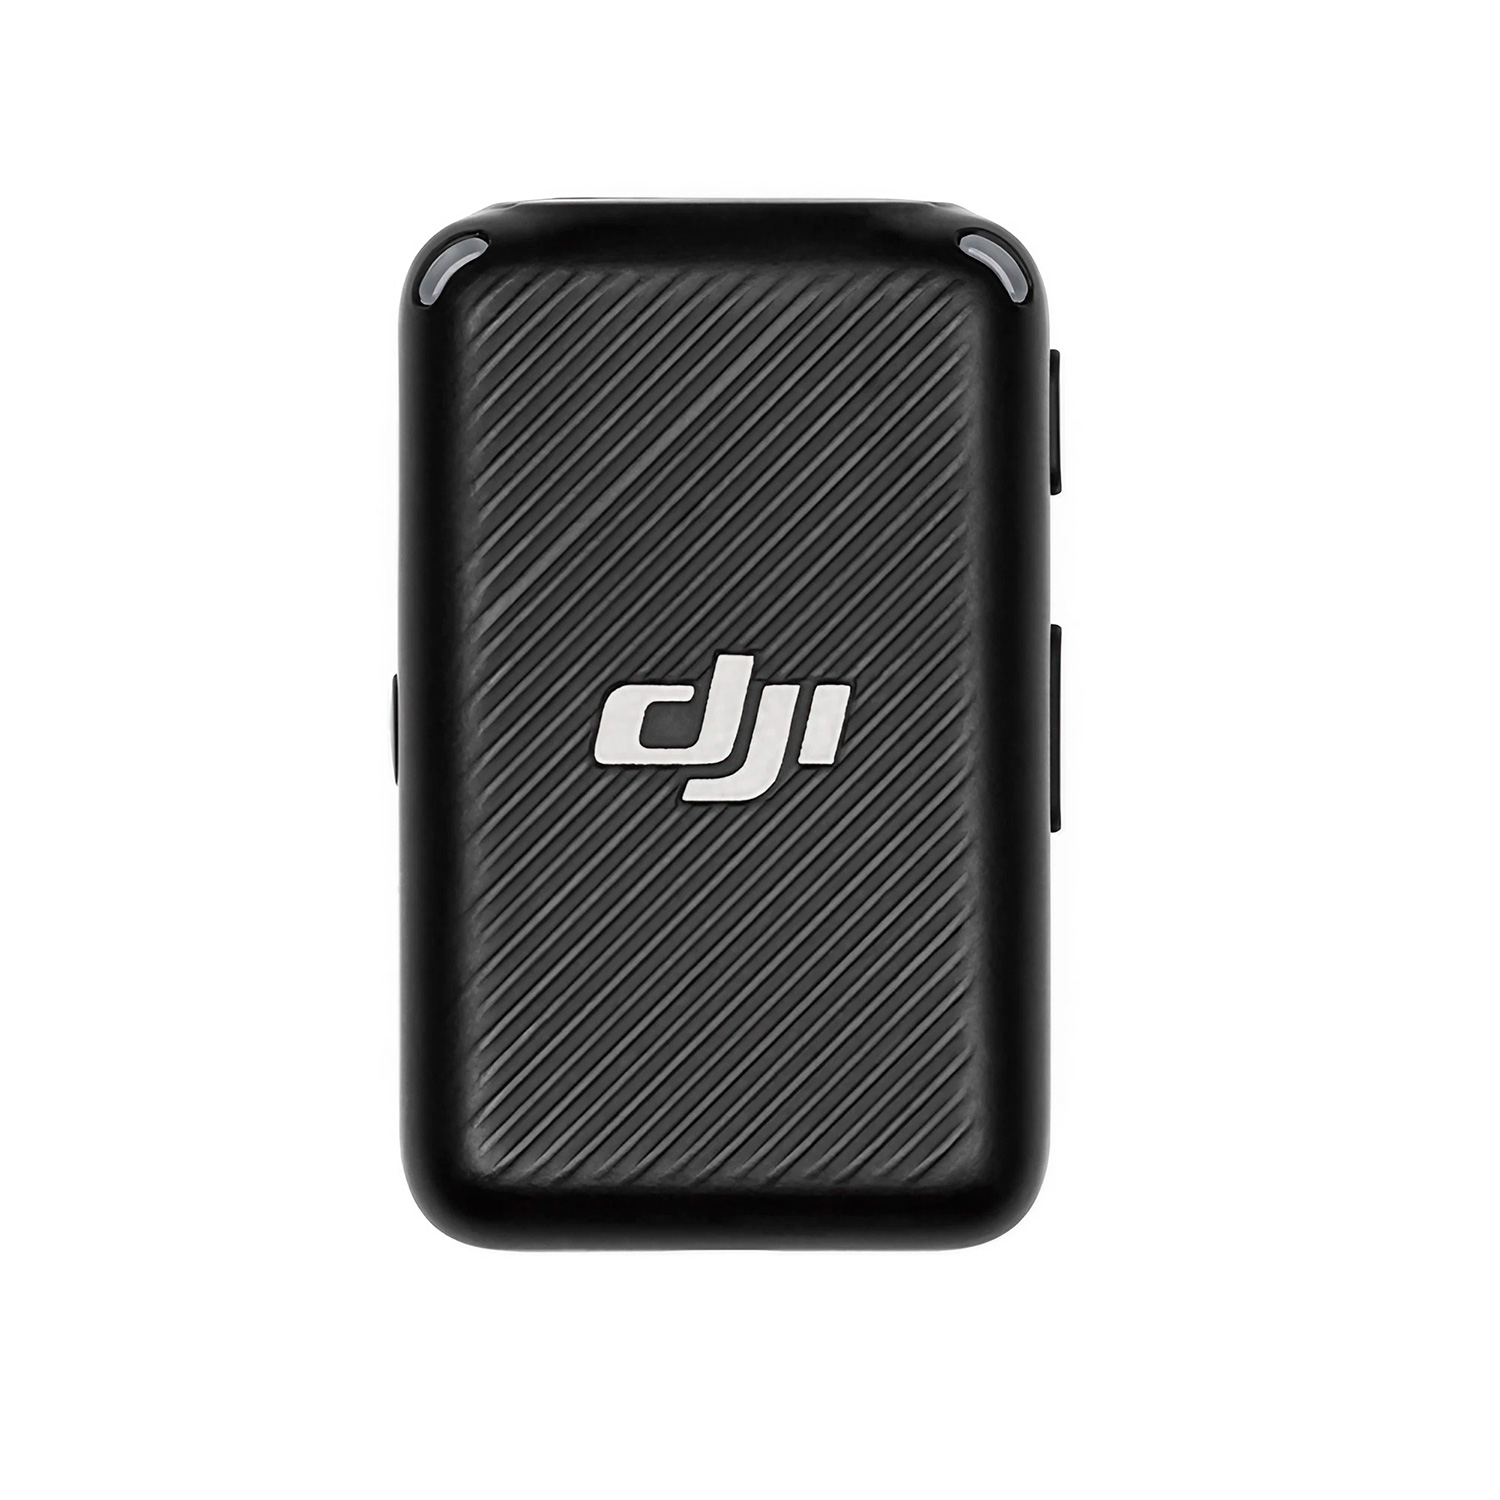 Microfone DJI Mic 2 USB-C 1 TX + 1 RX + Charging Case FCC Sem Fio para Smartphone - Preto

